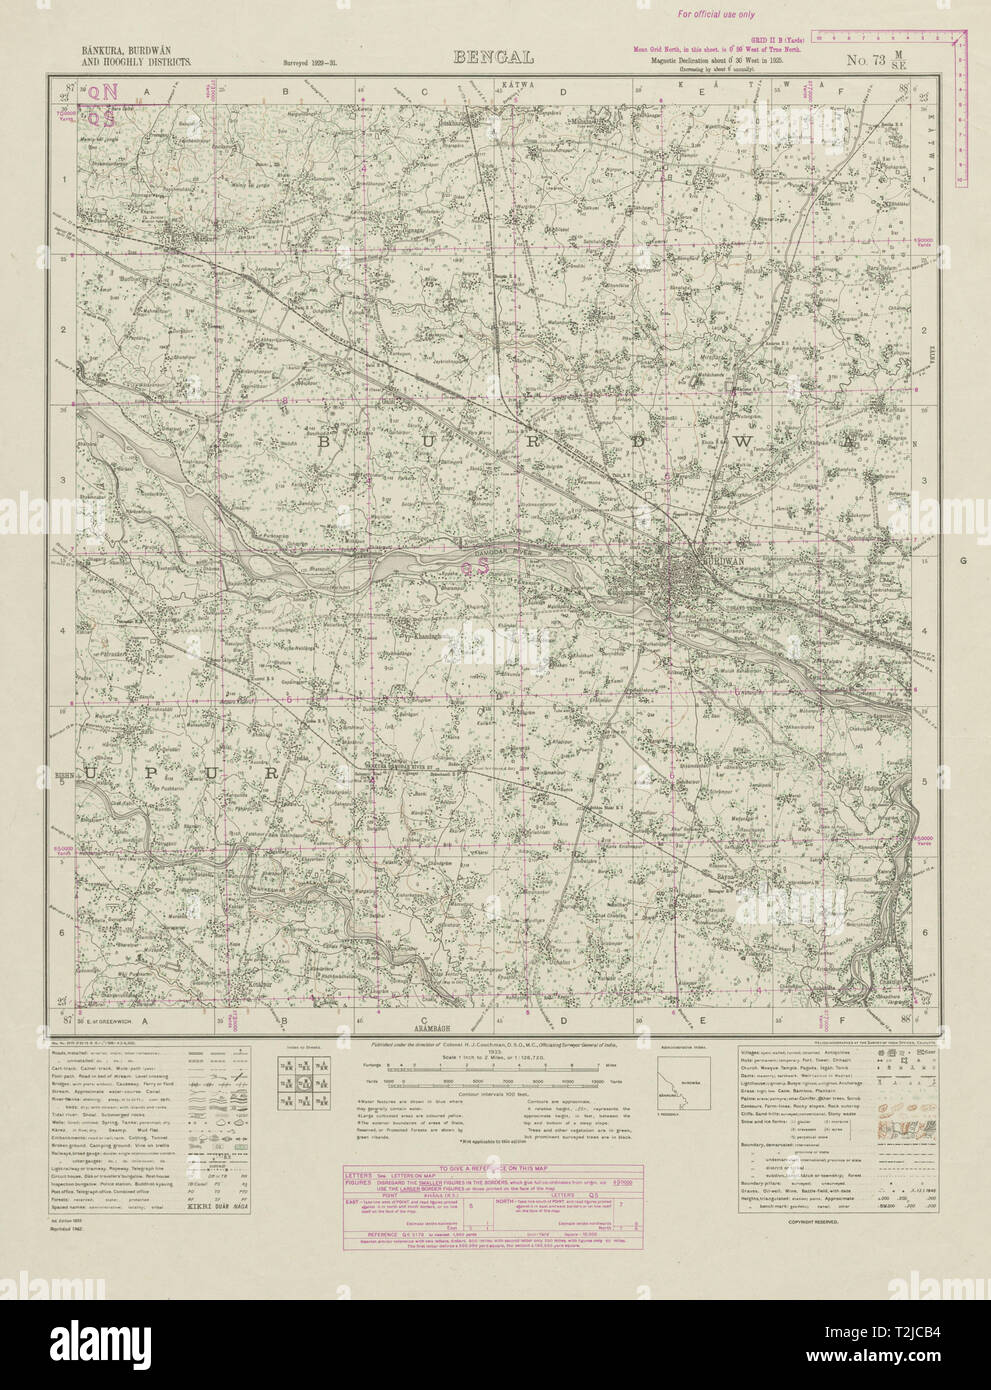 SURVEY OF INDIA 73 M/SE West Bengal Bardhaman Khandagosh Bhatar Indas 1942 map Stock Photo